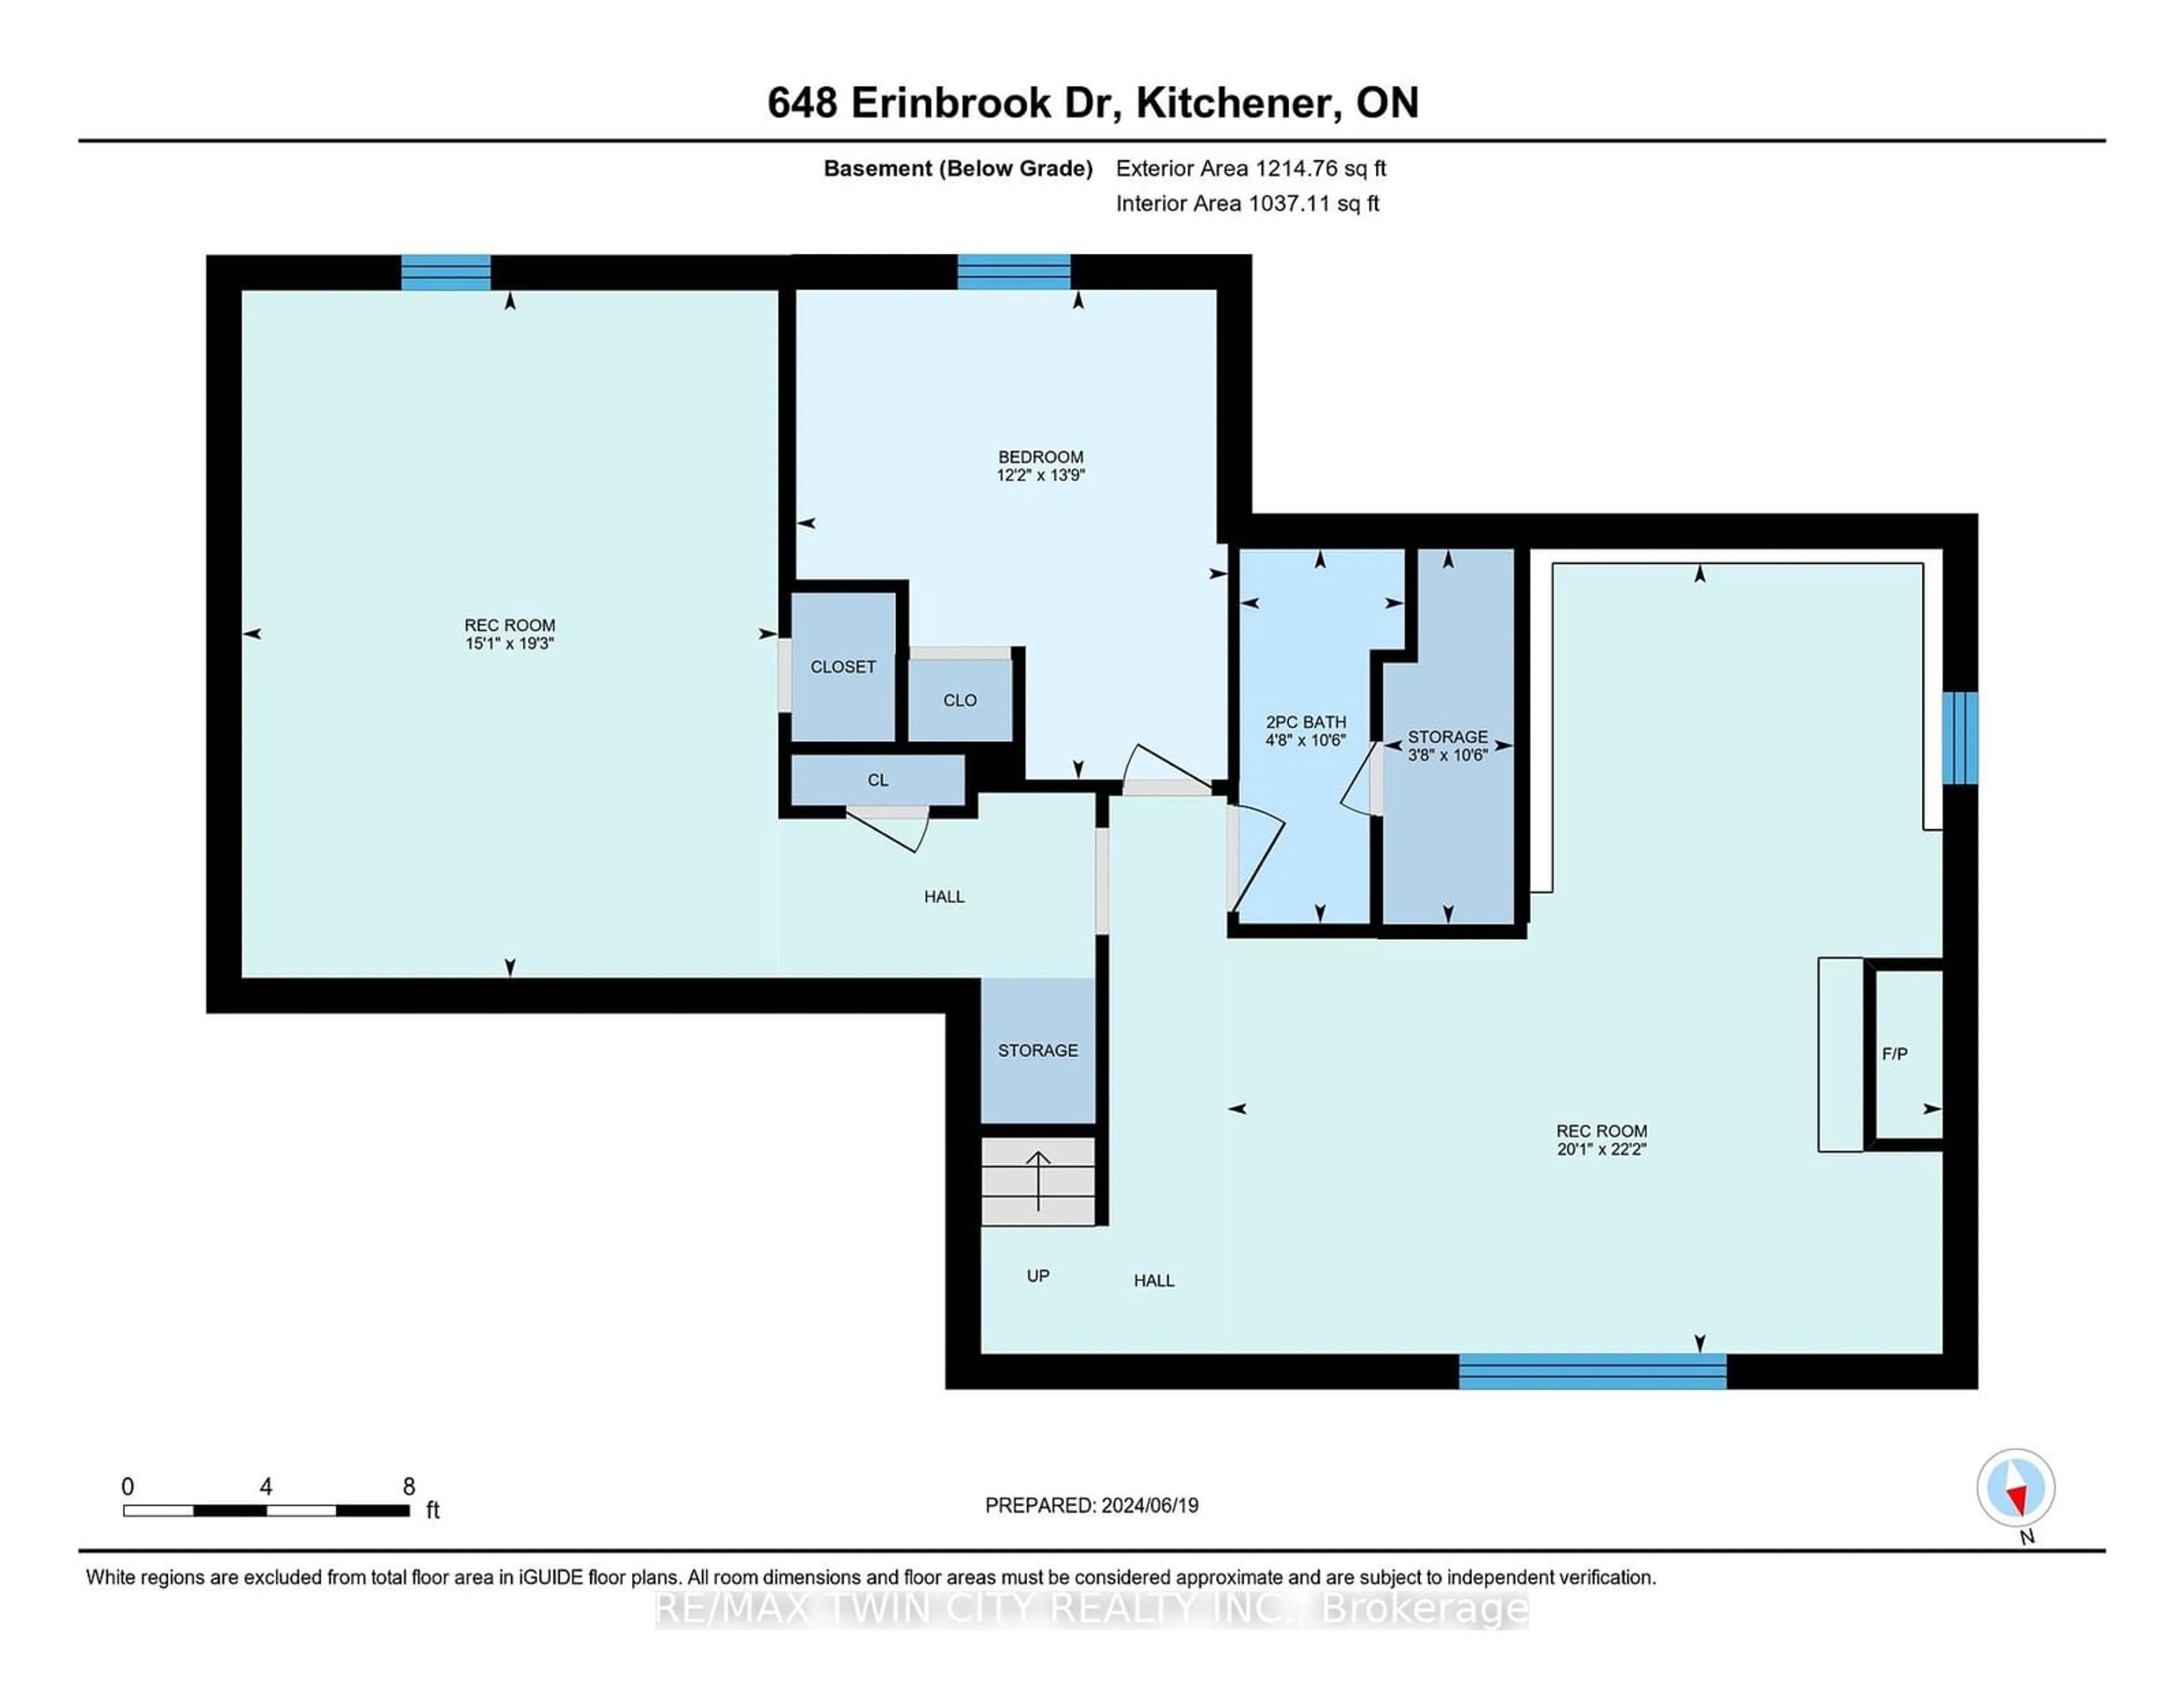 Floor plan for 648 Erinbrook Dr, Kitchener Ontario N2E 2R1